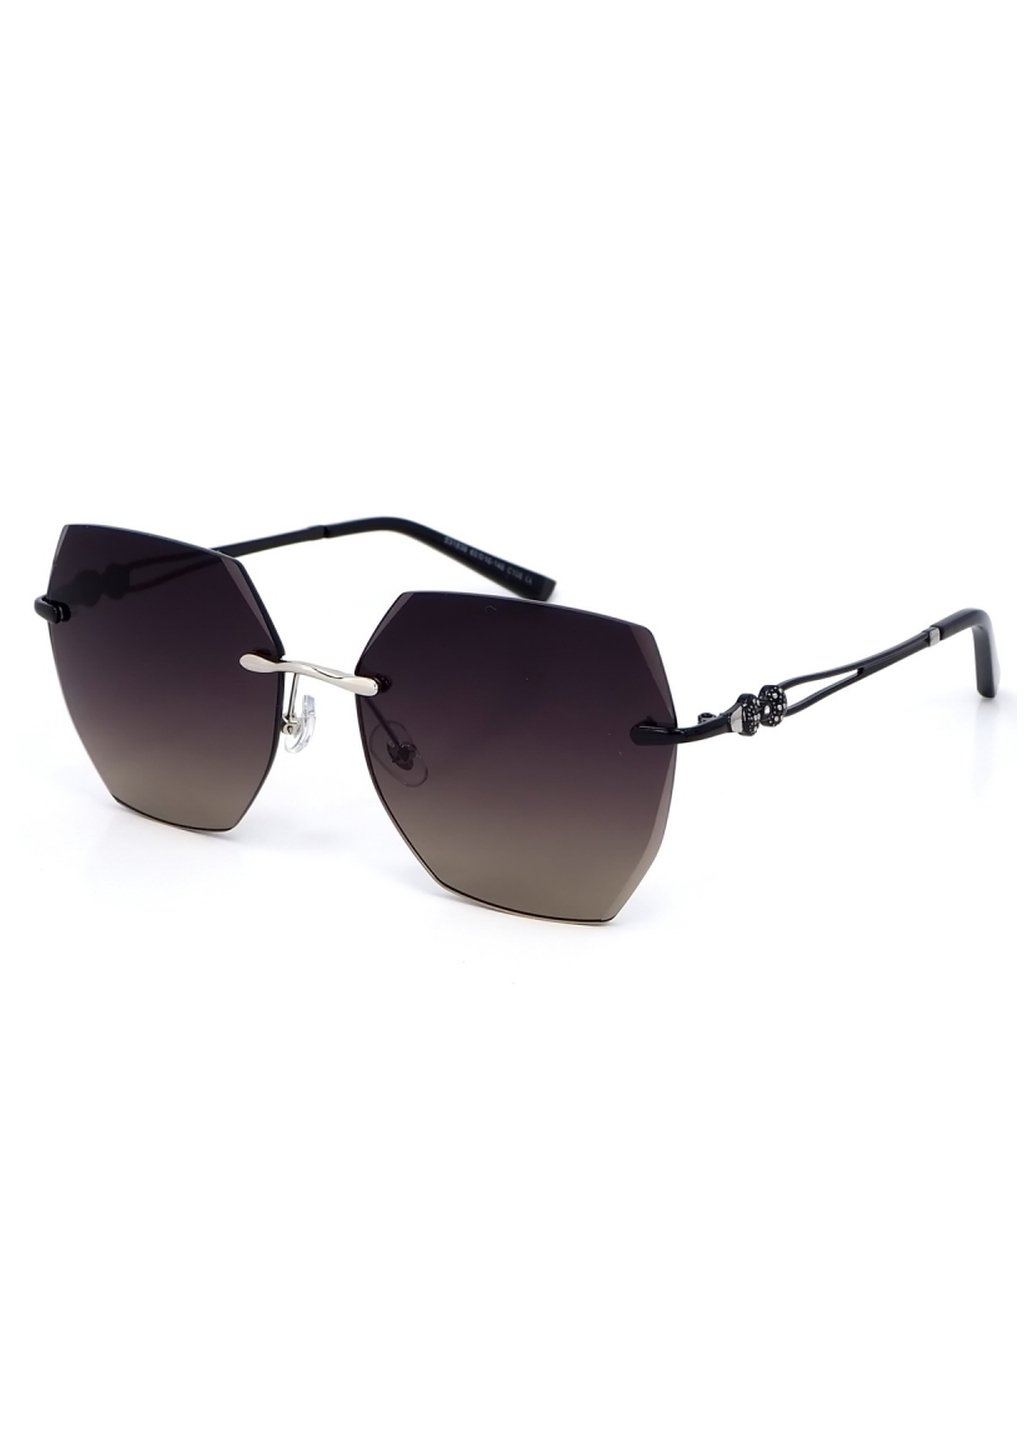 Купить Женские солнцезащитные очки Merlini с поляризацией S31836 117097 - Черный в интернет-магазине